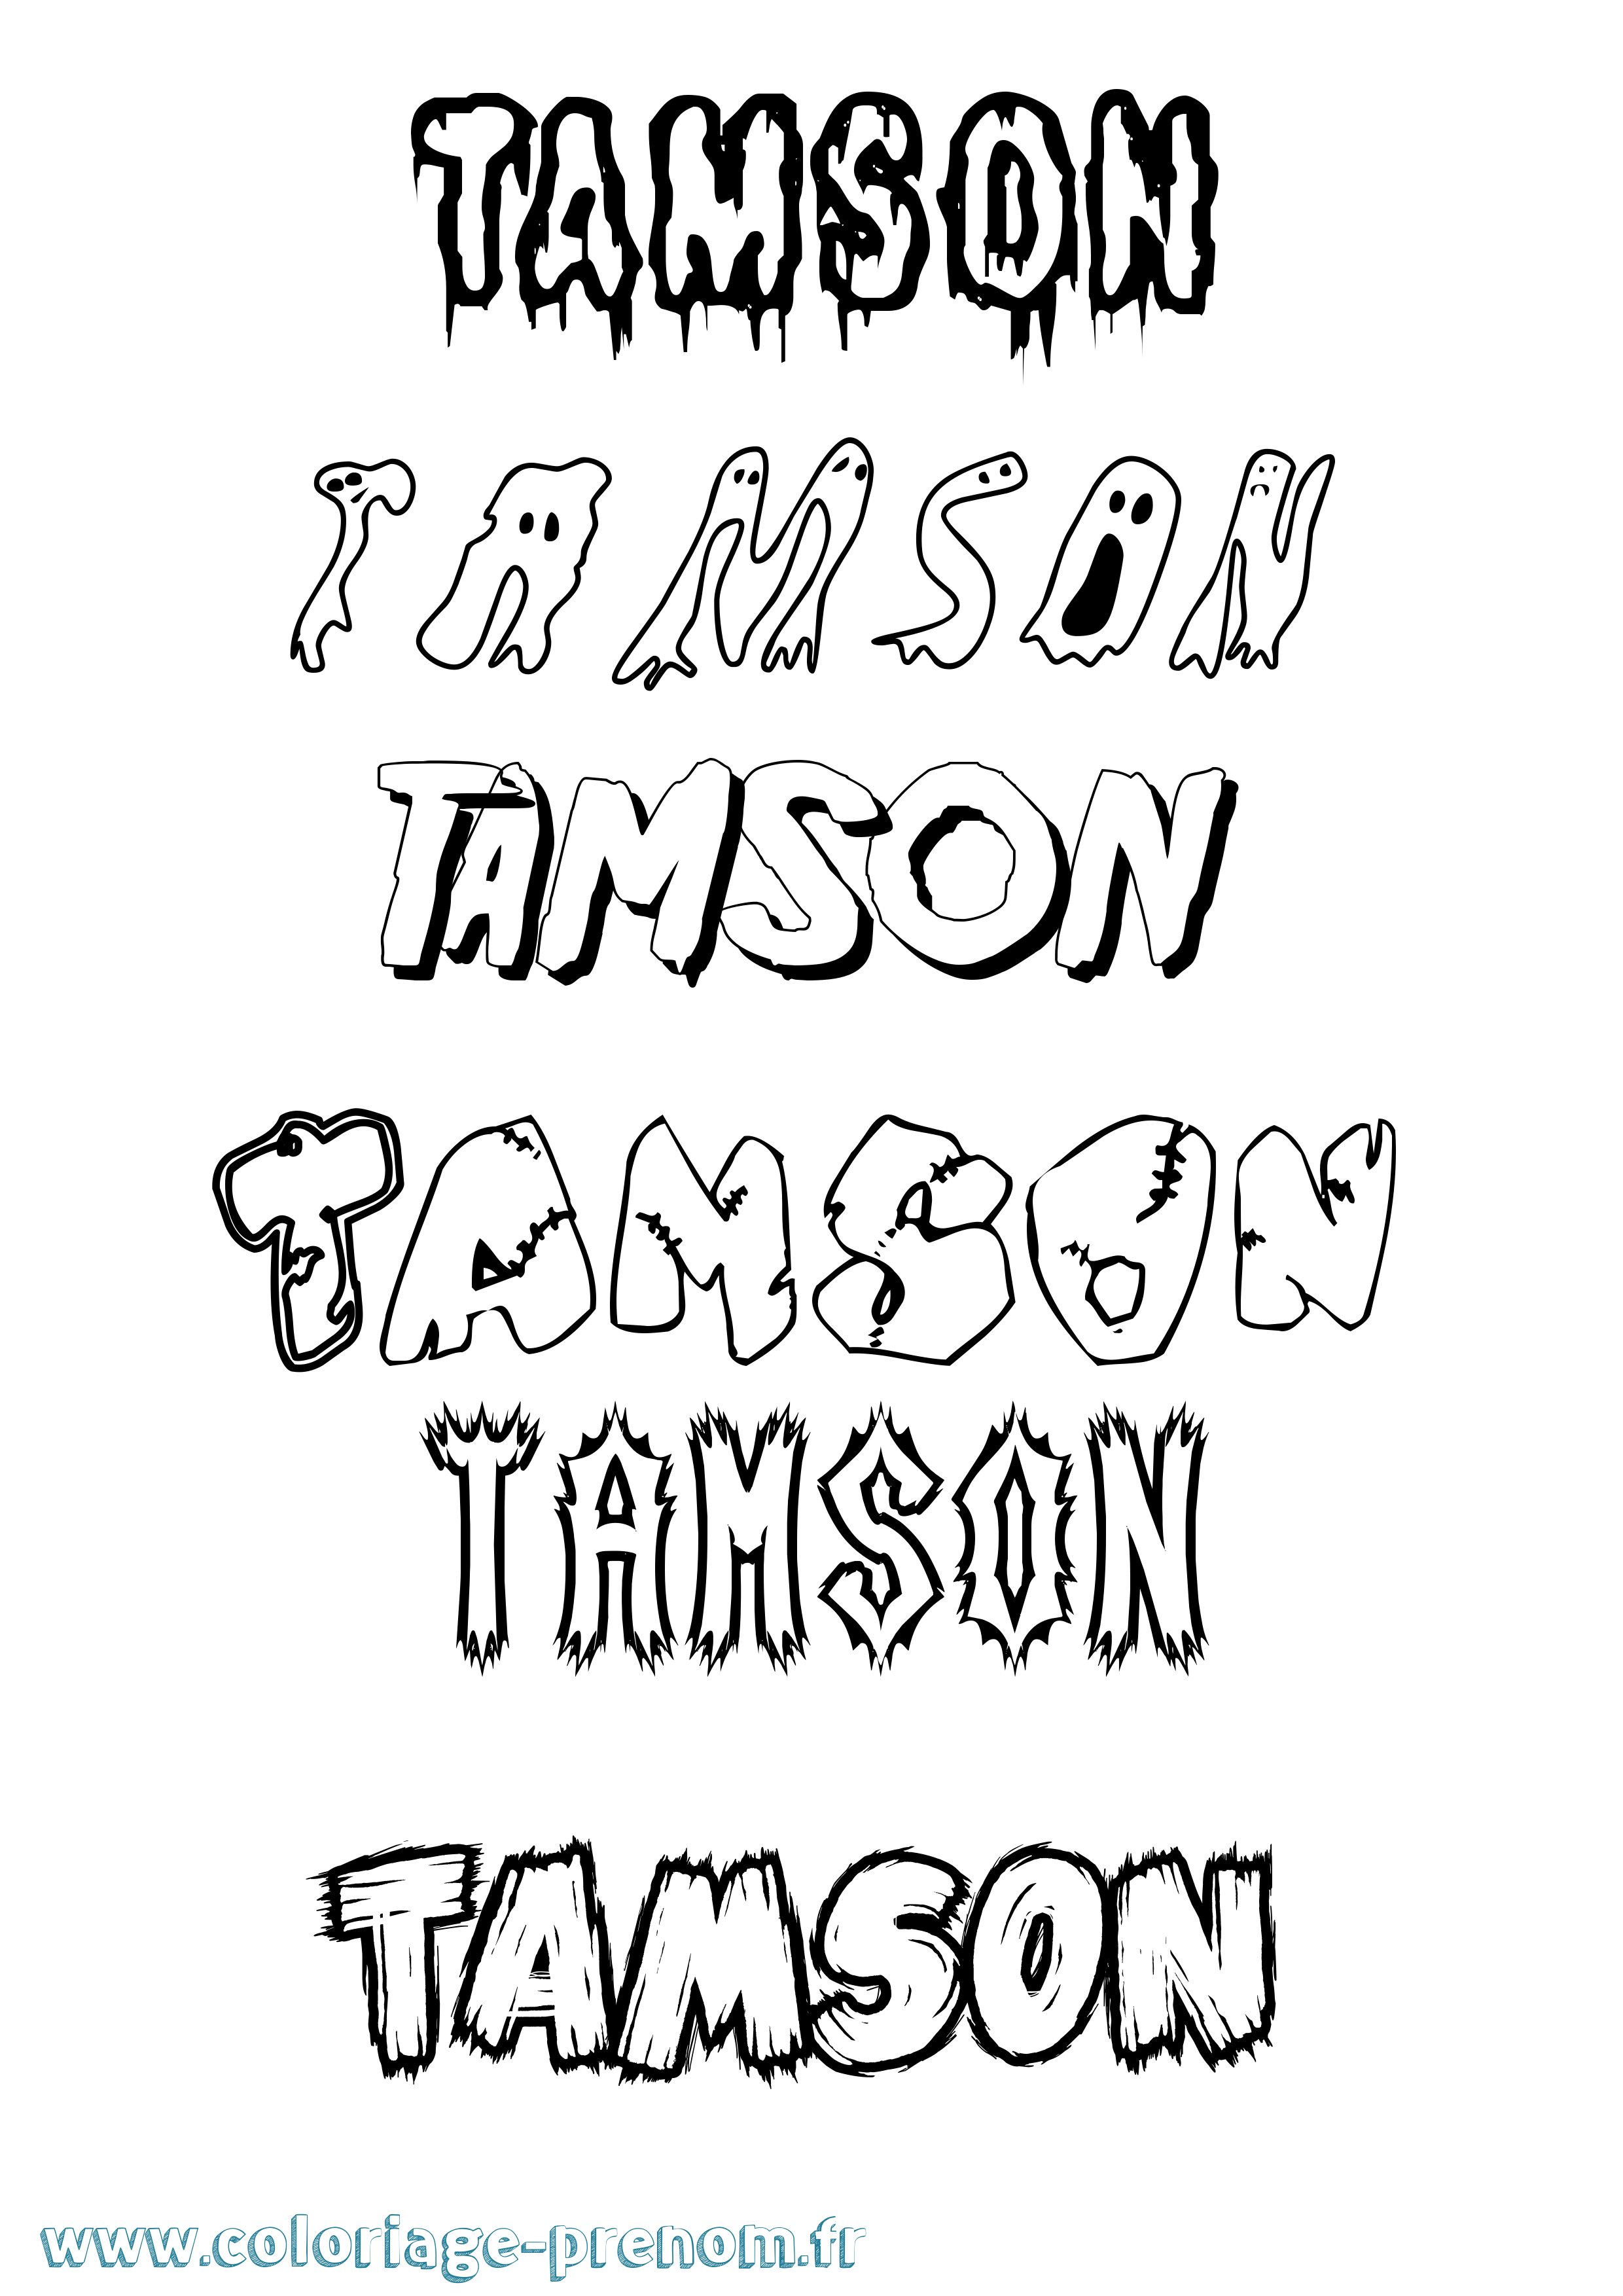 Coloriage prénom Tamson Frisson